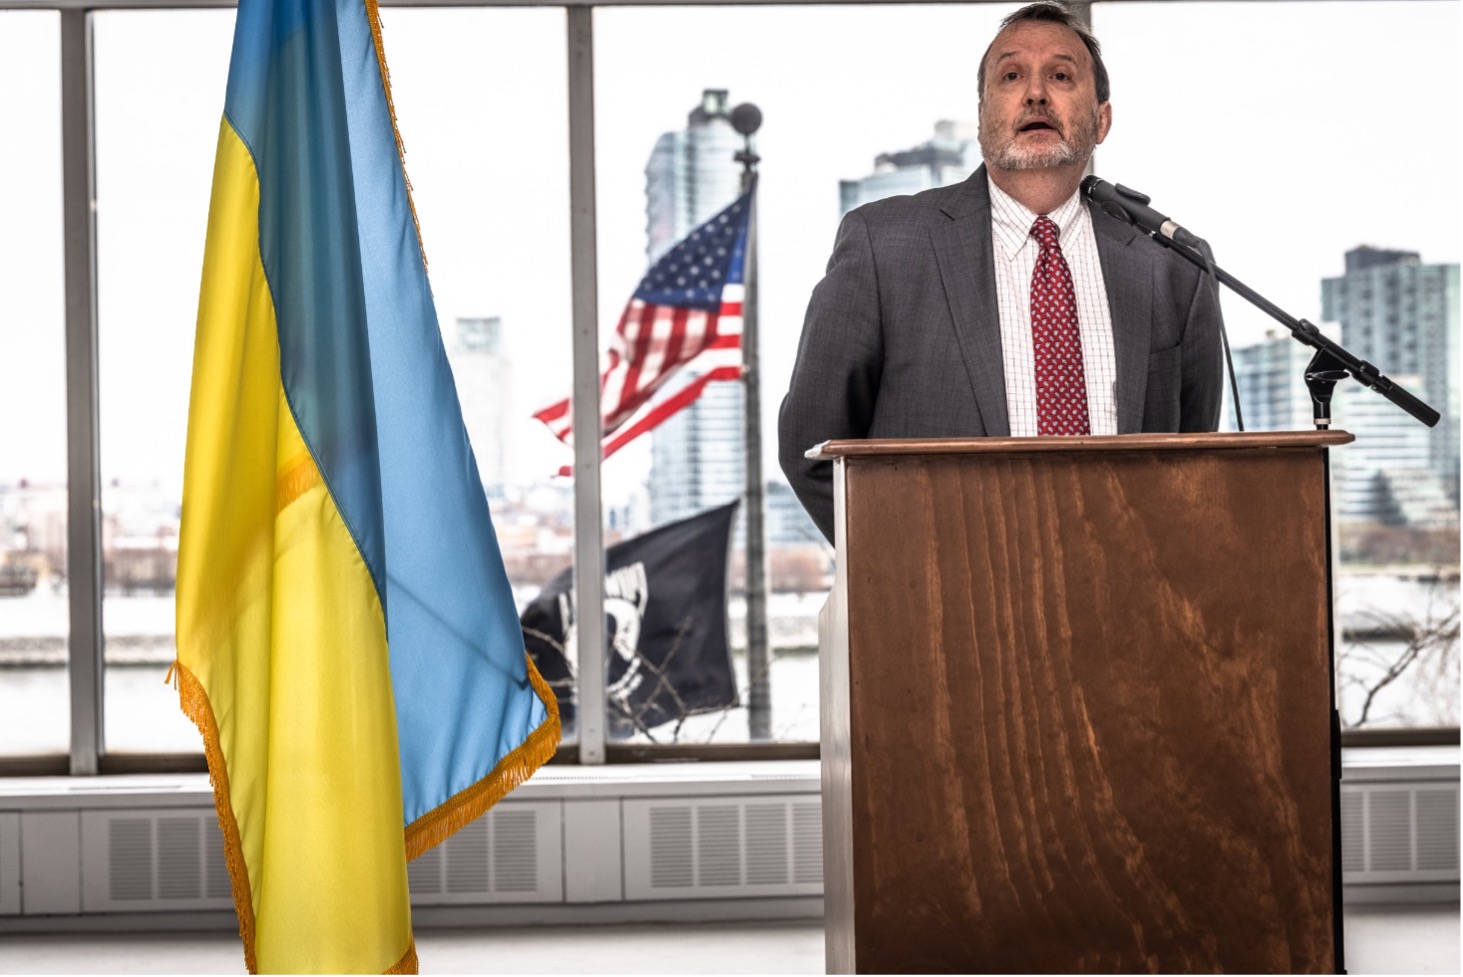 В годовщину освобождения Бучи в Нью-Йорке возле ООН открылась выставка о зверствах россиян в Украине